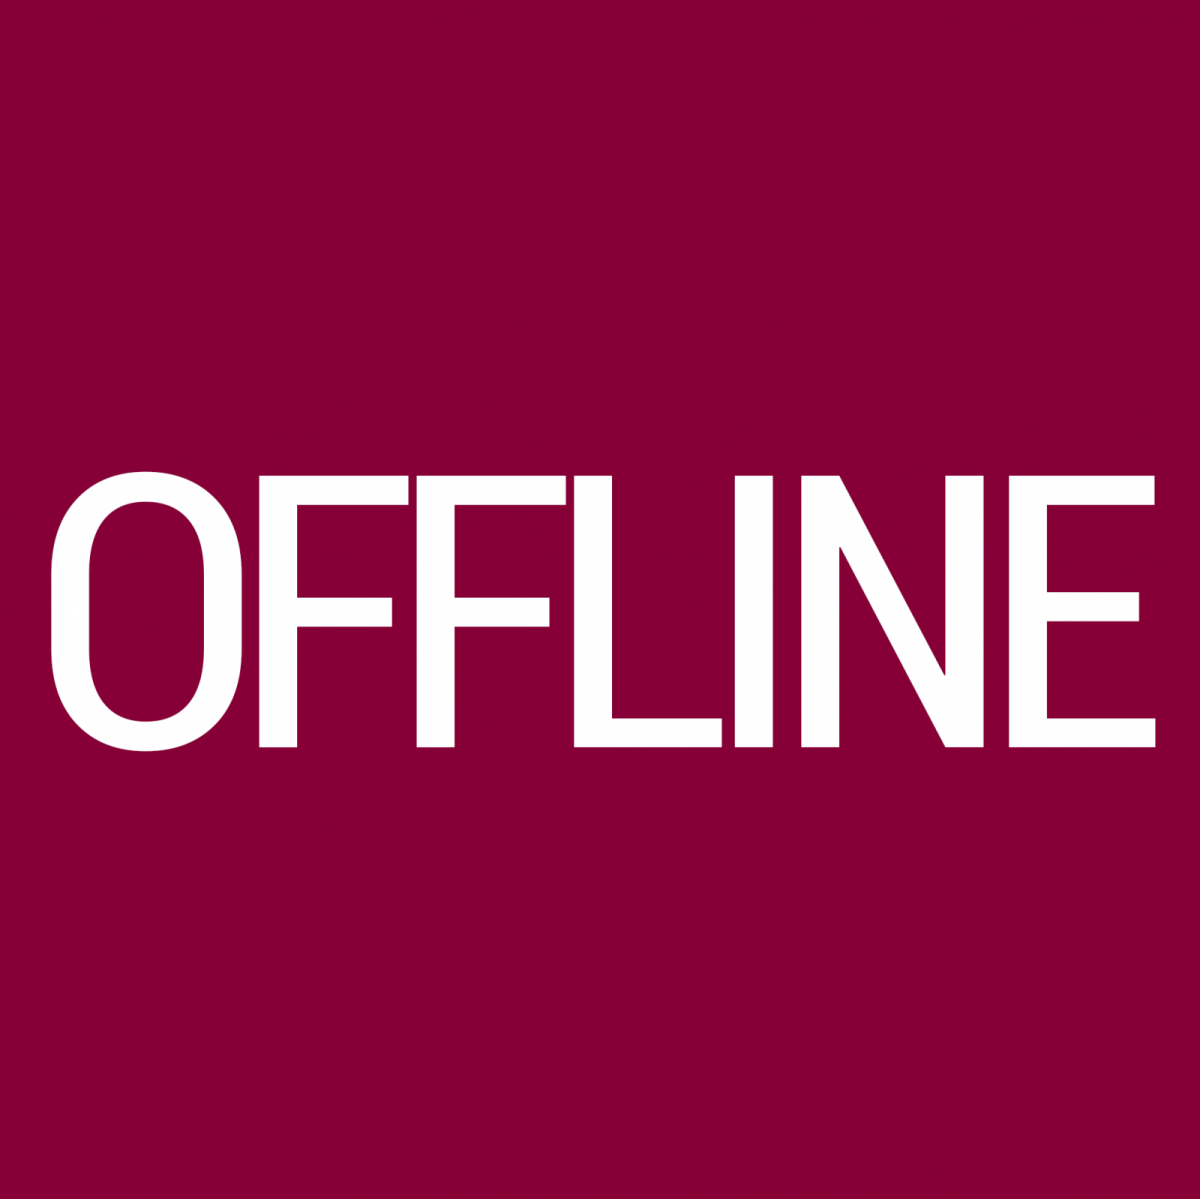 Офлайн. Логотип offline. Надпись оффлайн. Offline логотип офлайн. Offline auth